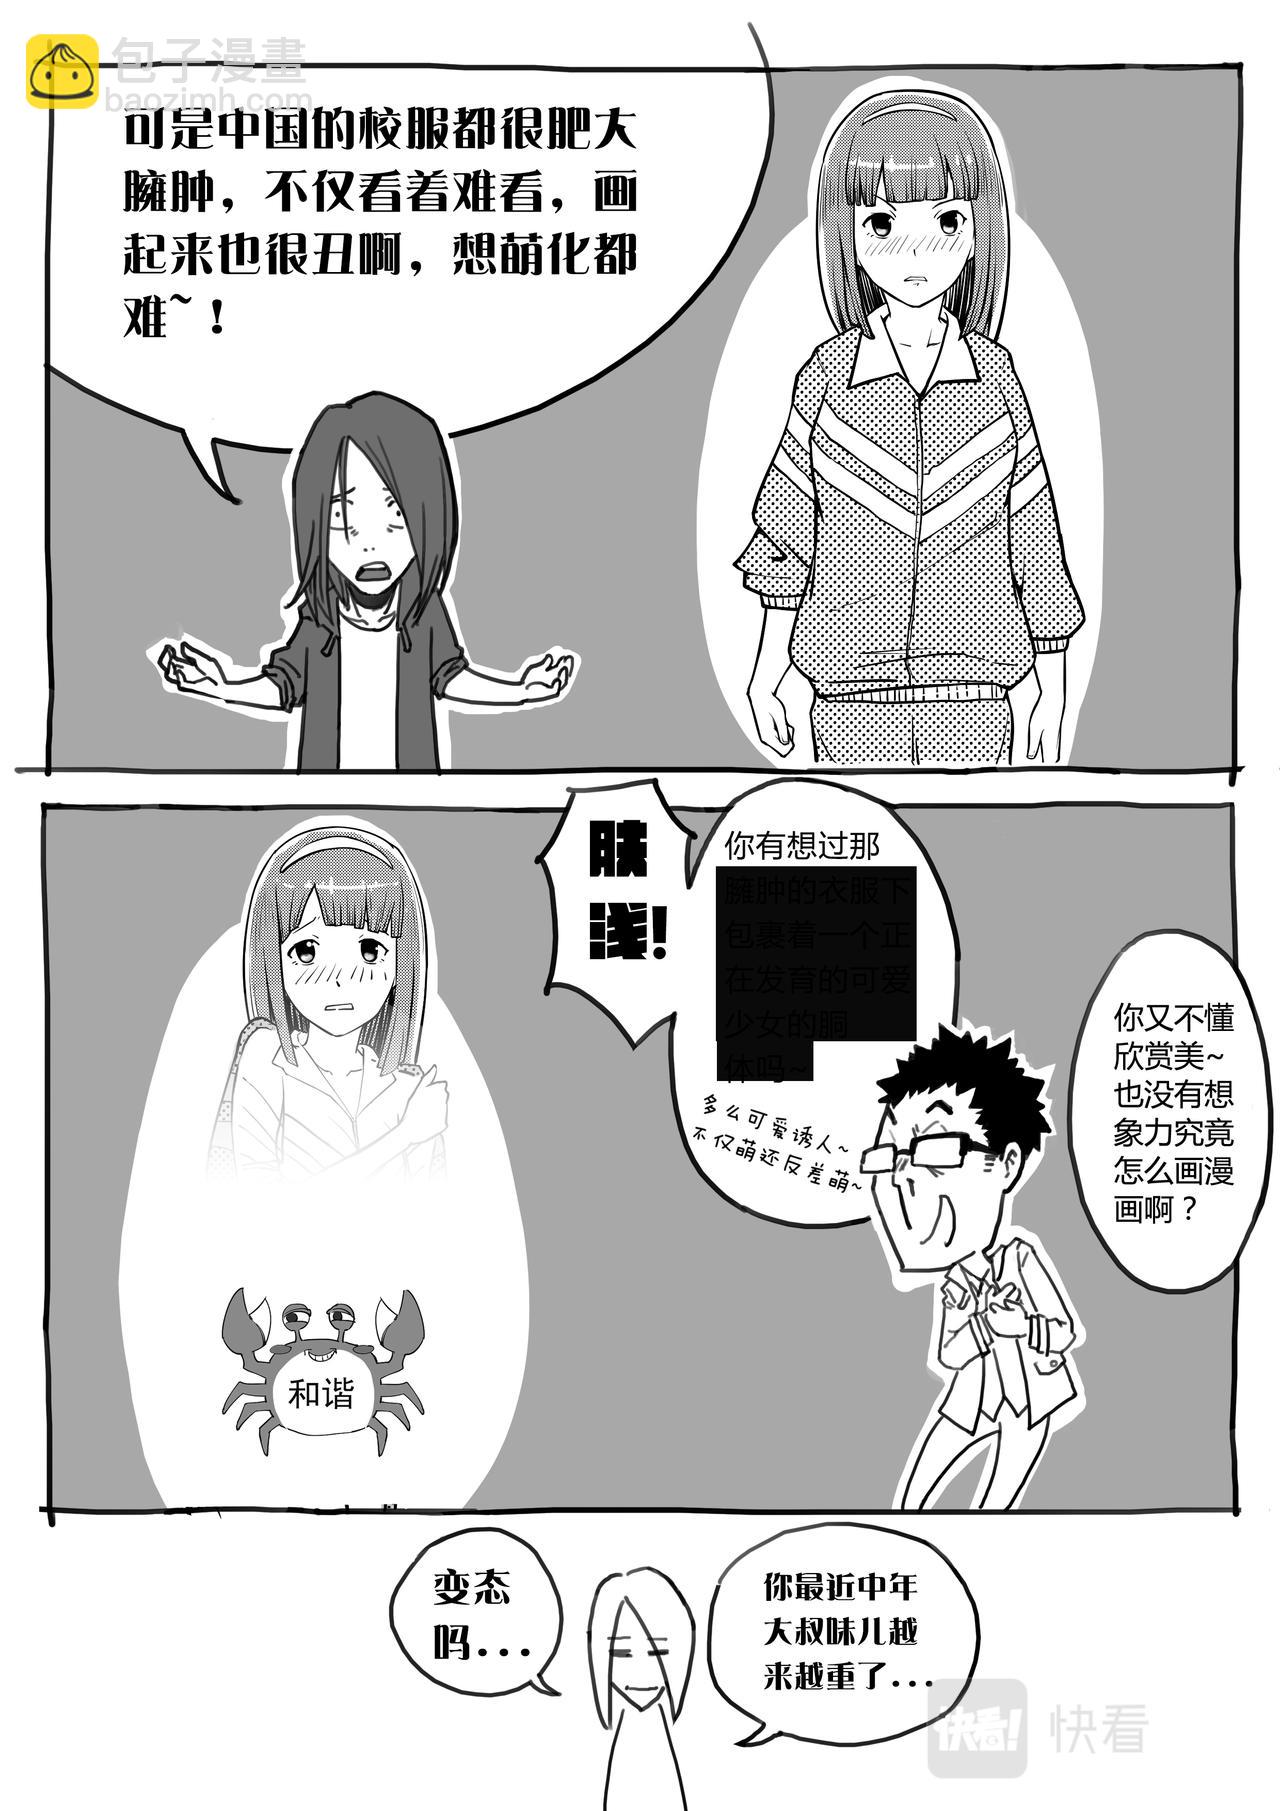 常盤勇者 - 04-少年漫畫篇01 - 2